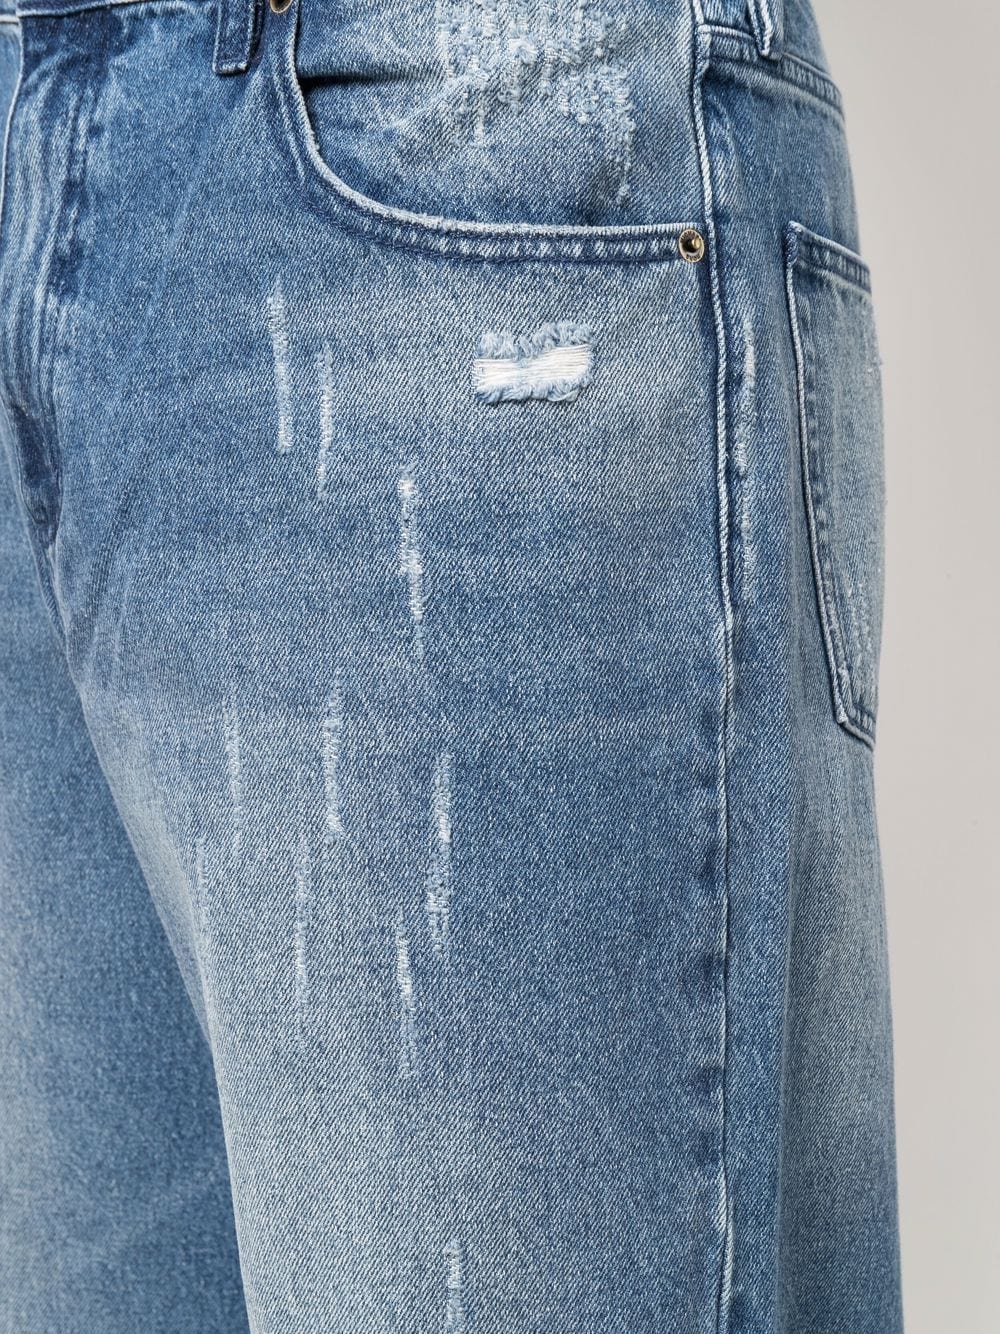 фото Michael kors широкие джинсы с эффектом потертости